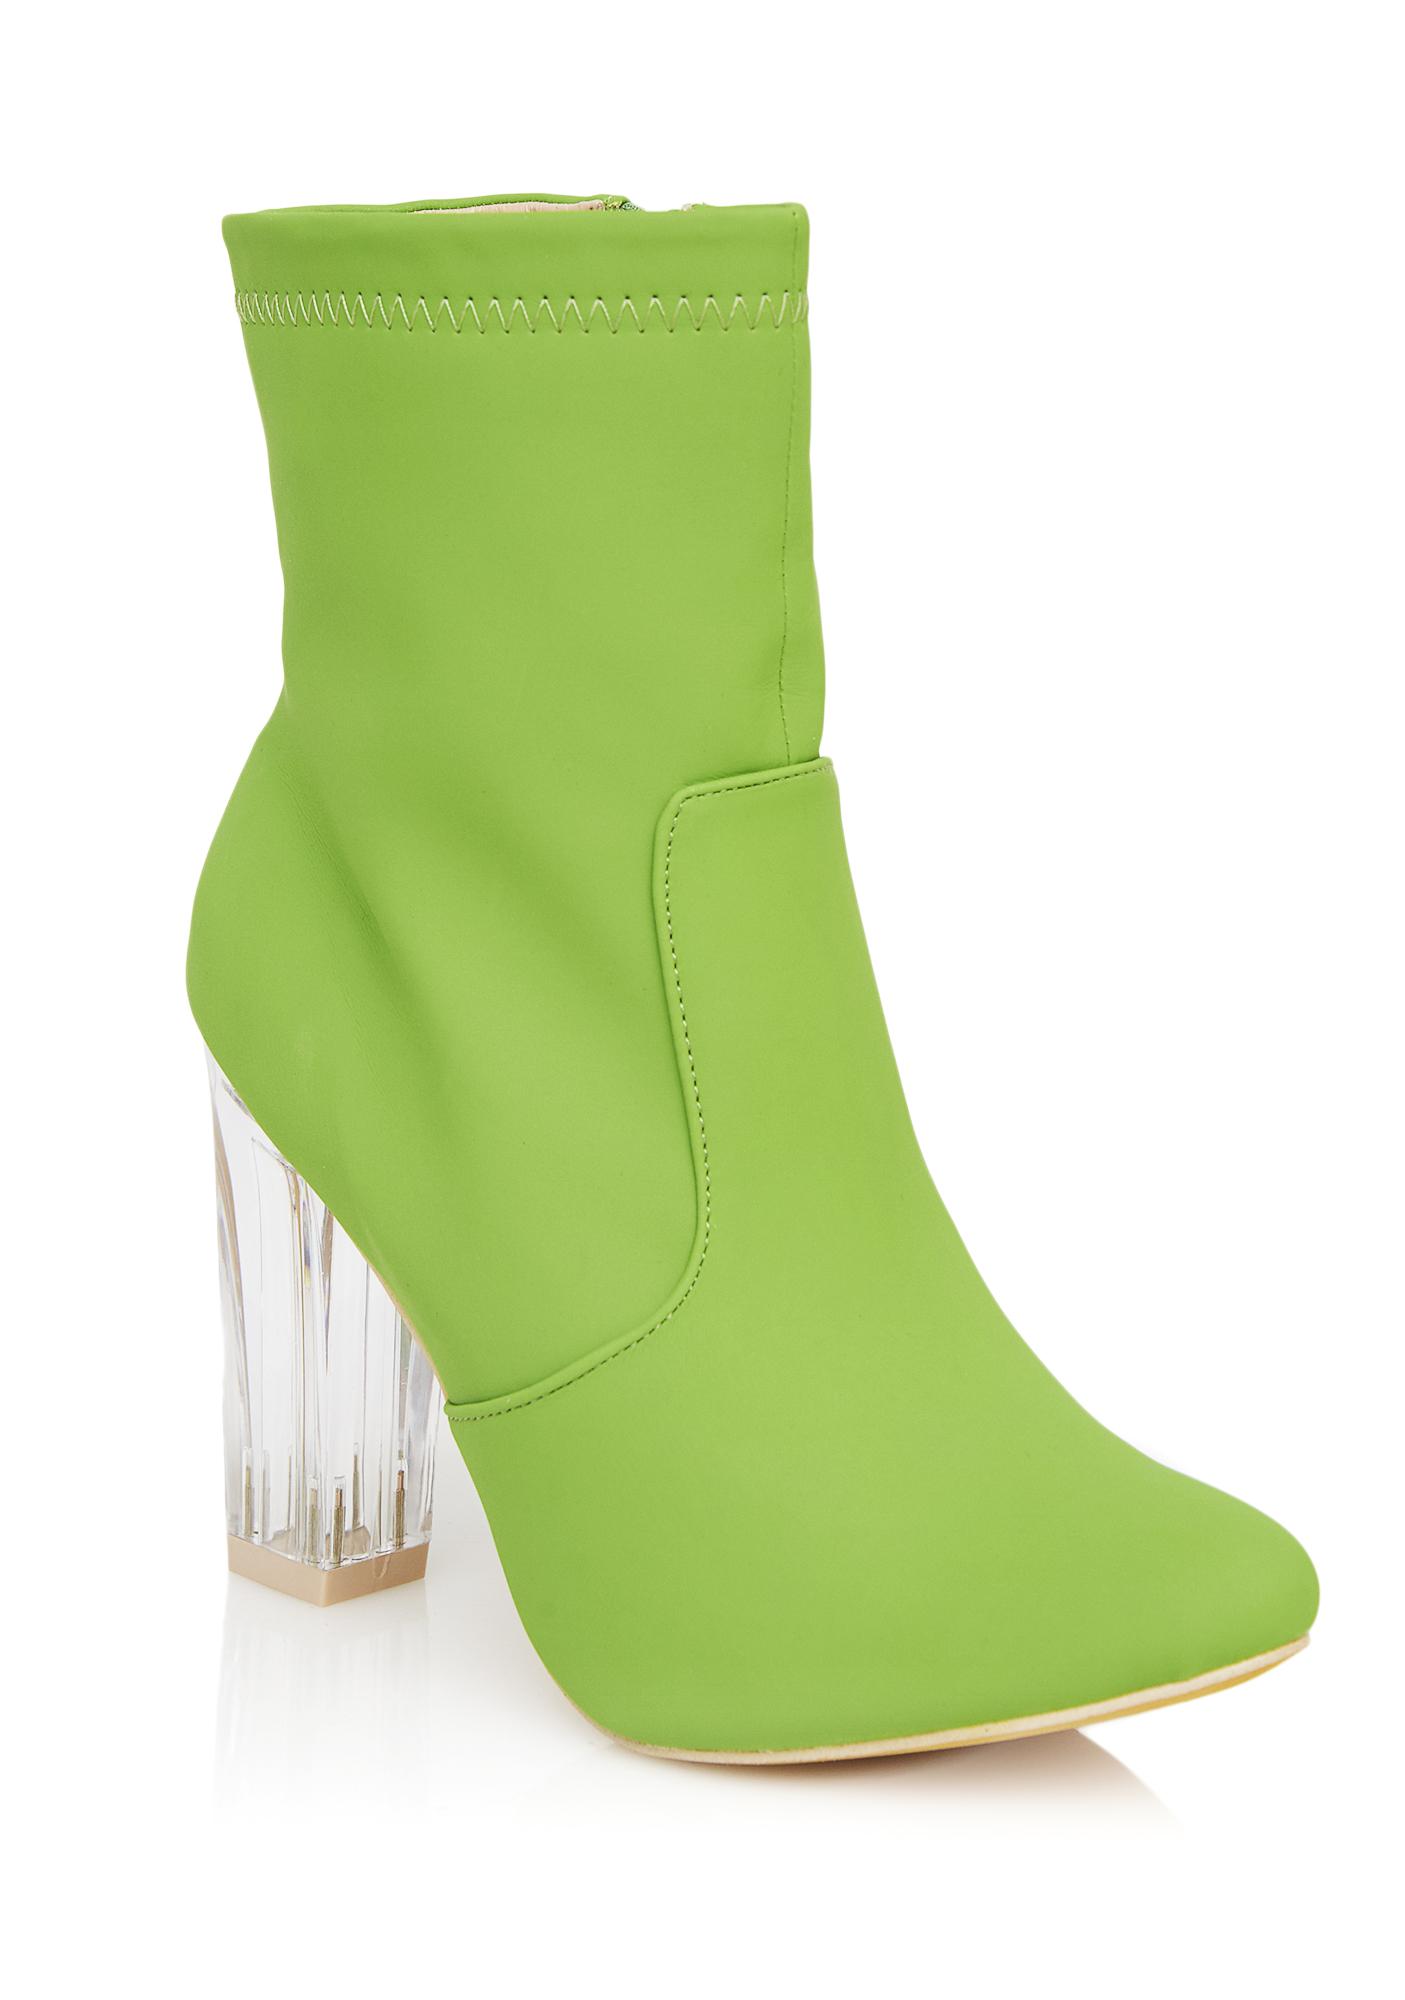 light green boots